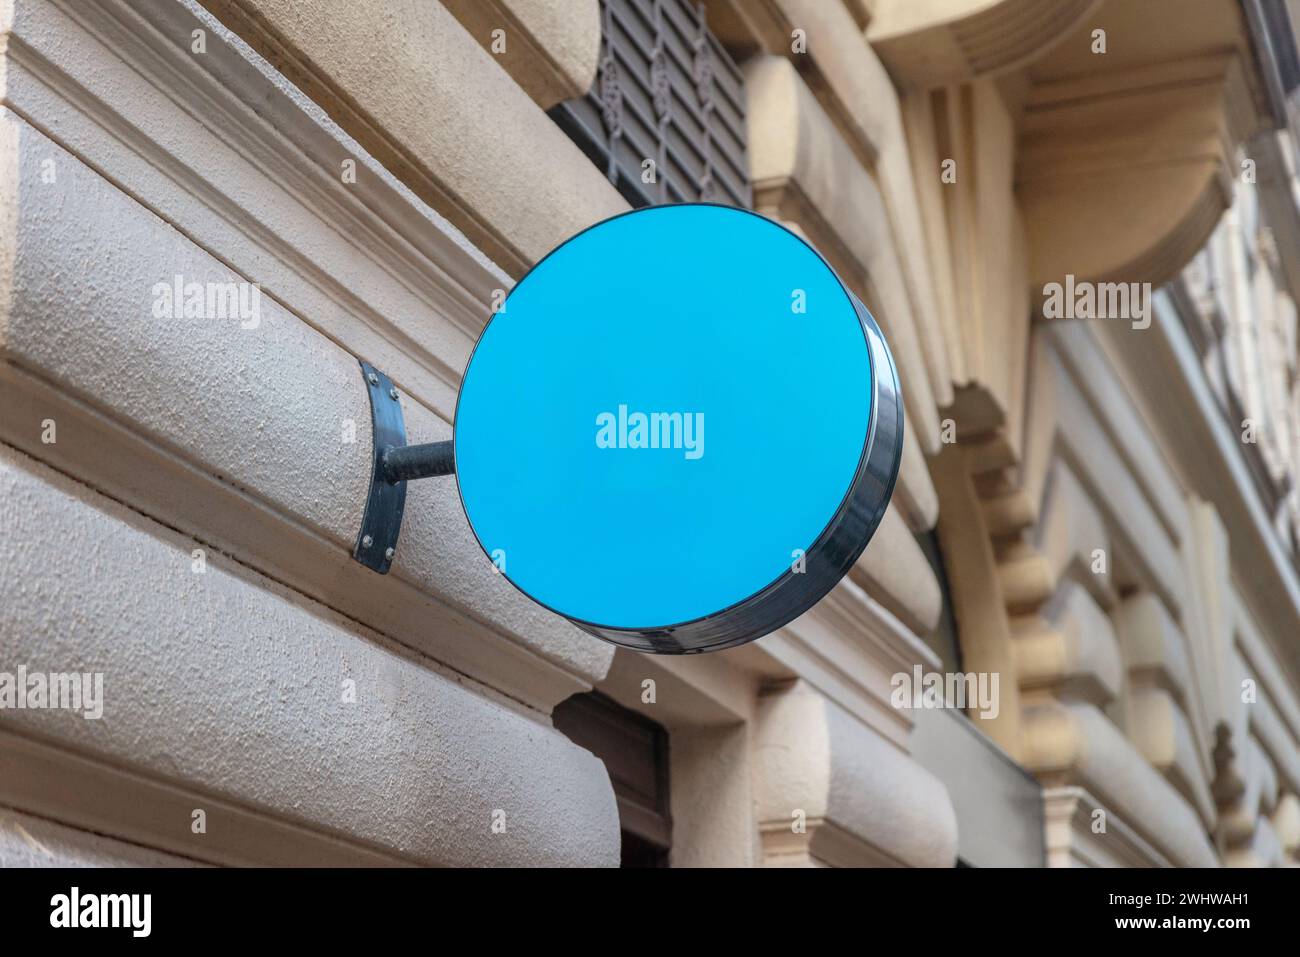 Klare blaue Kreisschilder für werben für das Logo und die Stadtwerbung, um die Bekanntheit und Sichtbarkeit der Marke zu verbessern Stockfoto